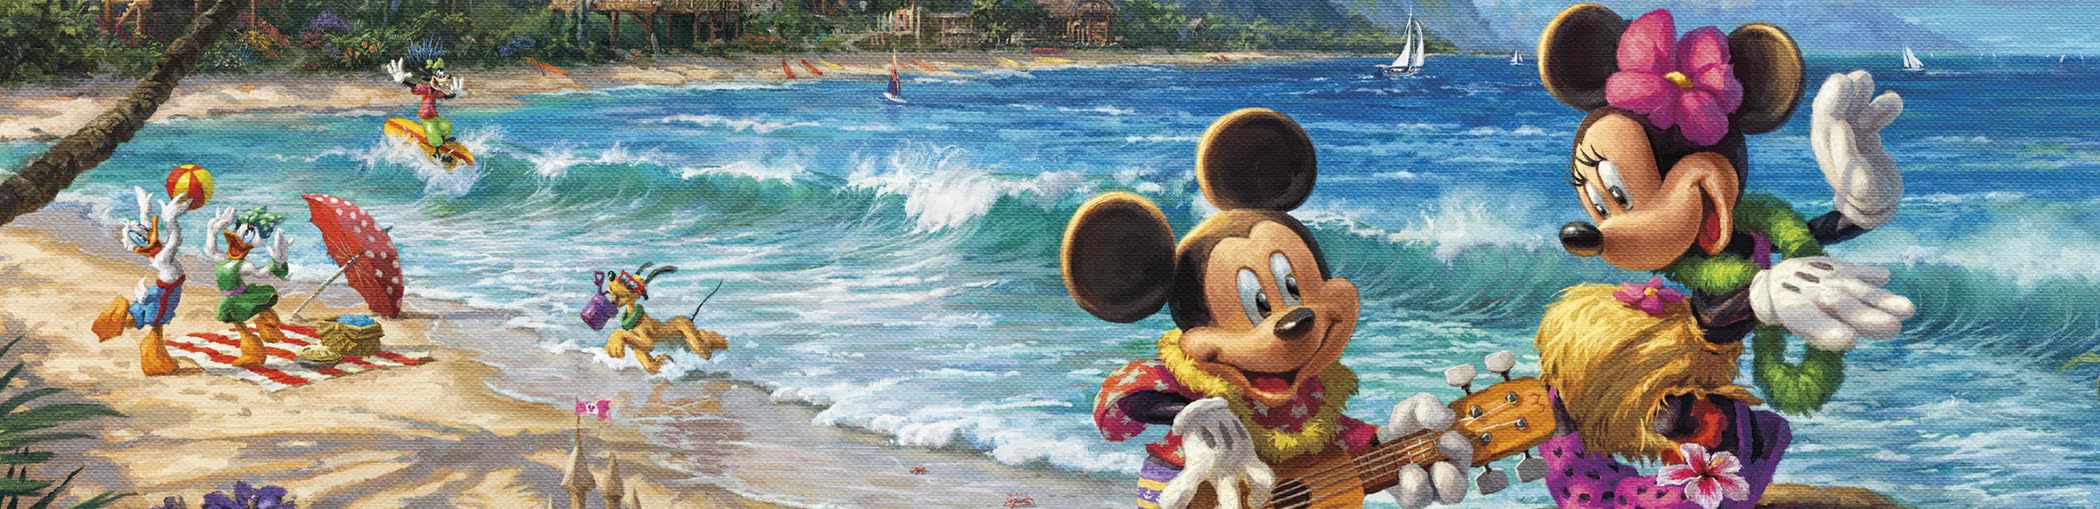 Ceaco - Thomas Kinkade - Disney - Mickey & Minnie in Hawaii - 1000 Piece Jigsaw Puzzle